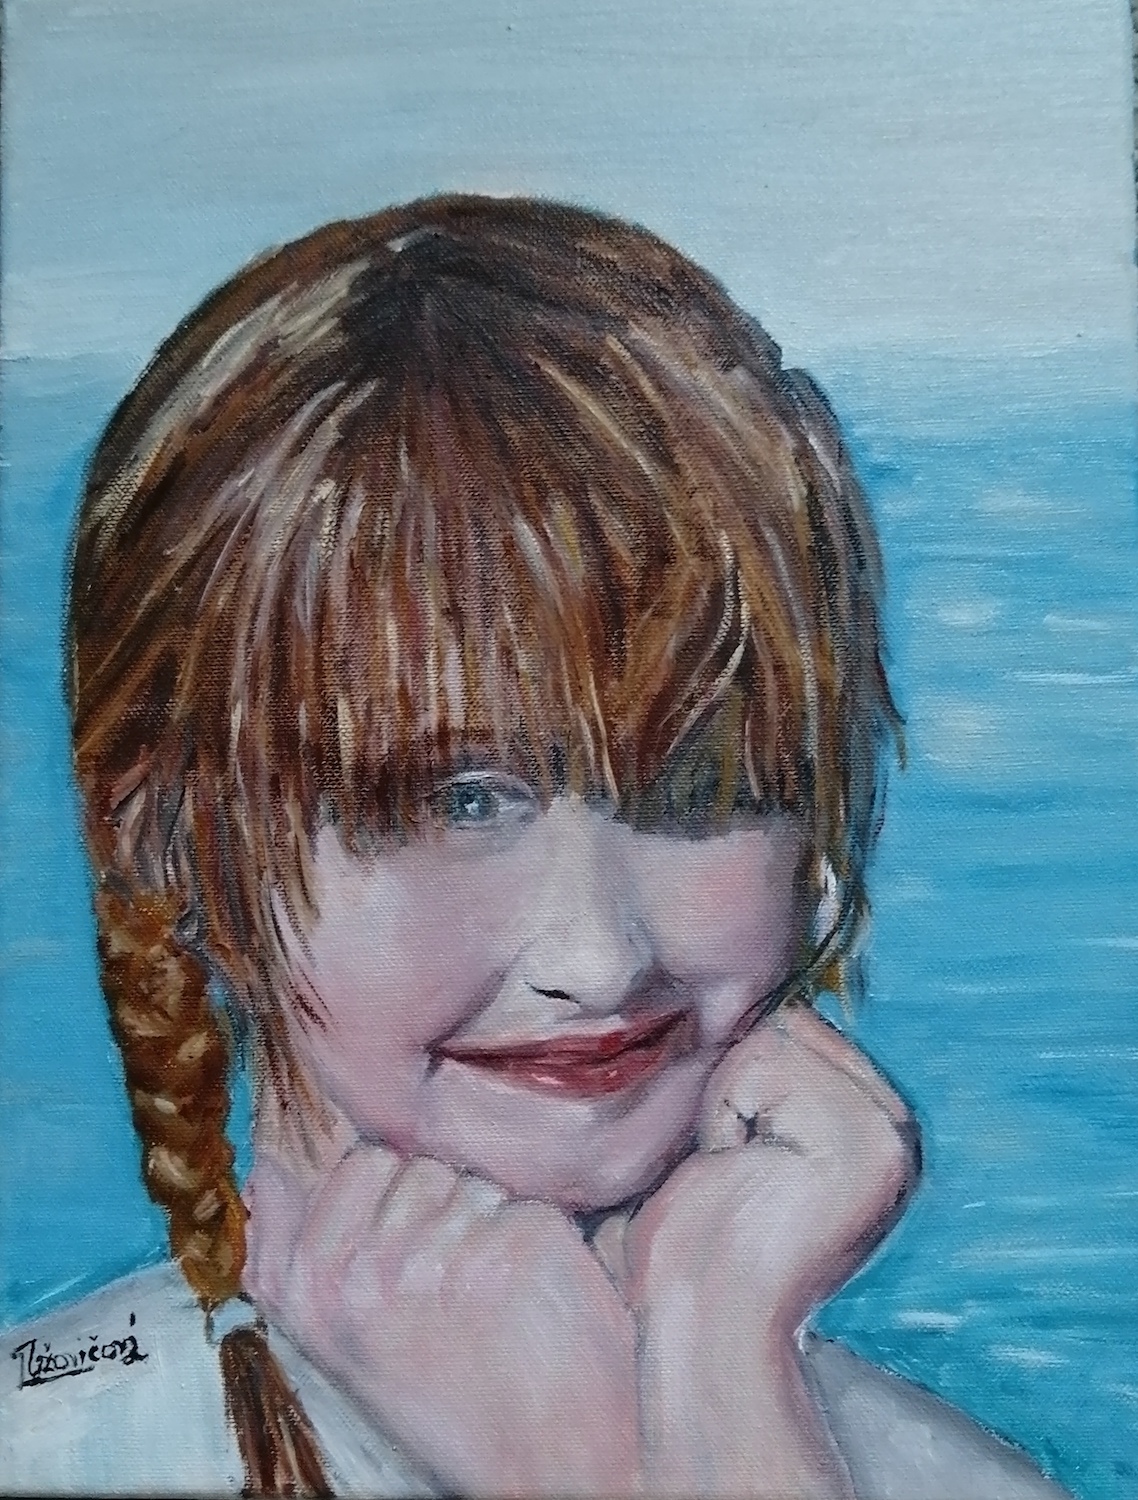 lubica uzovicova girl oil on canvas 30 x 40 cm